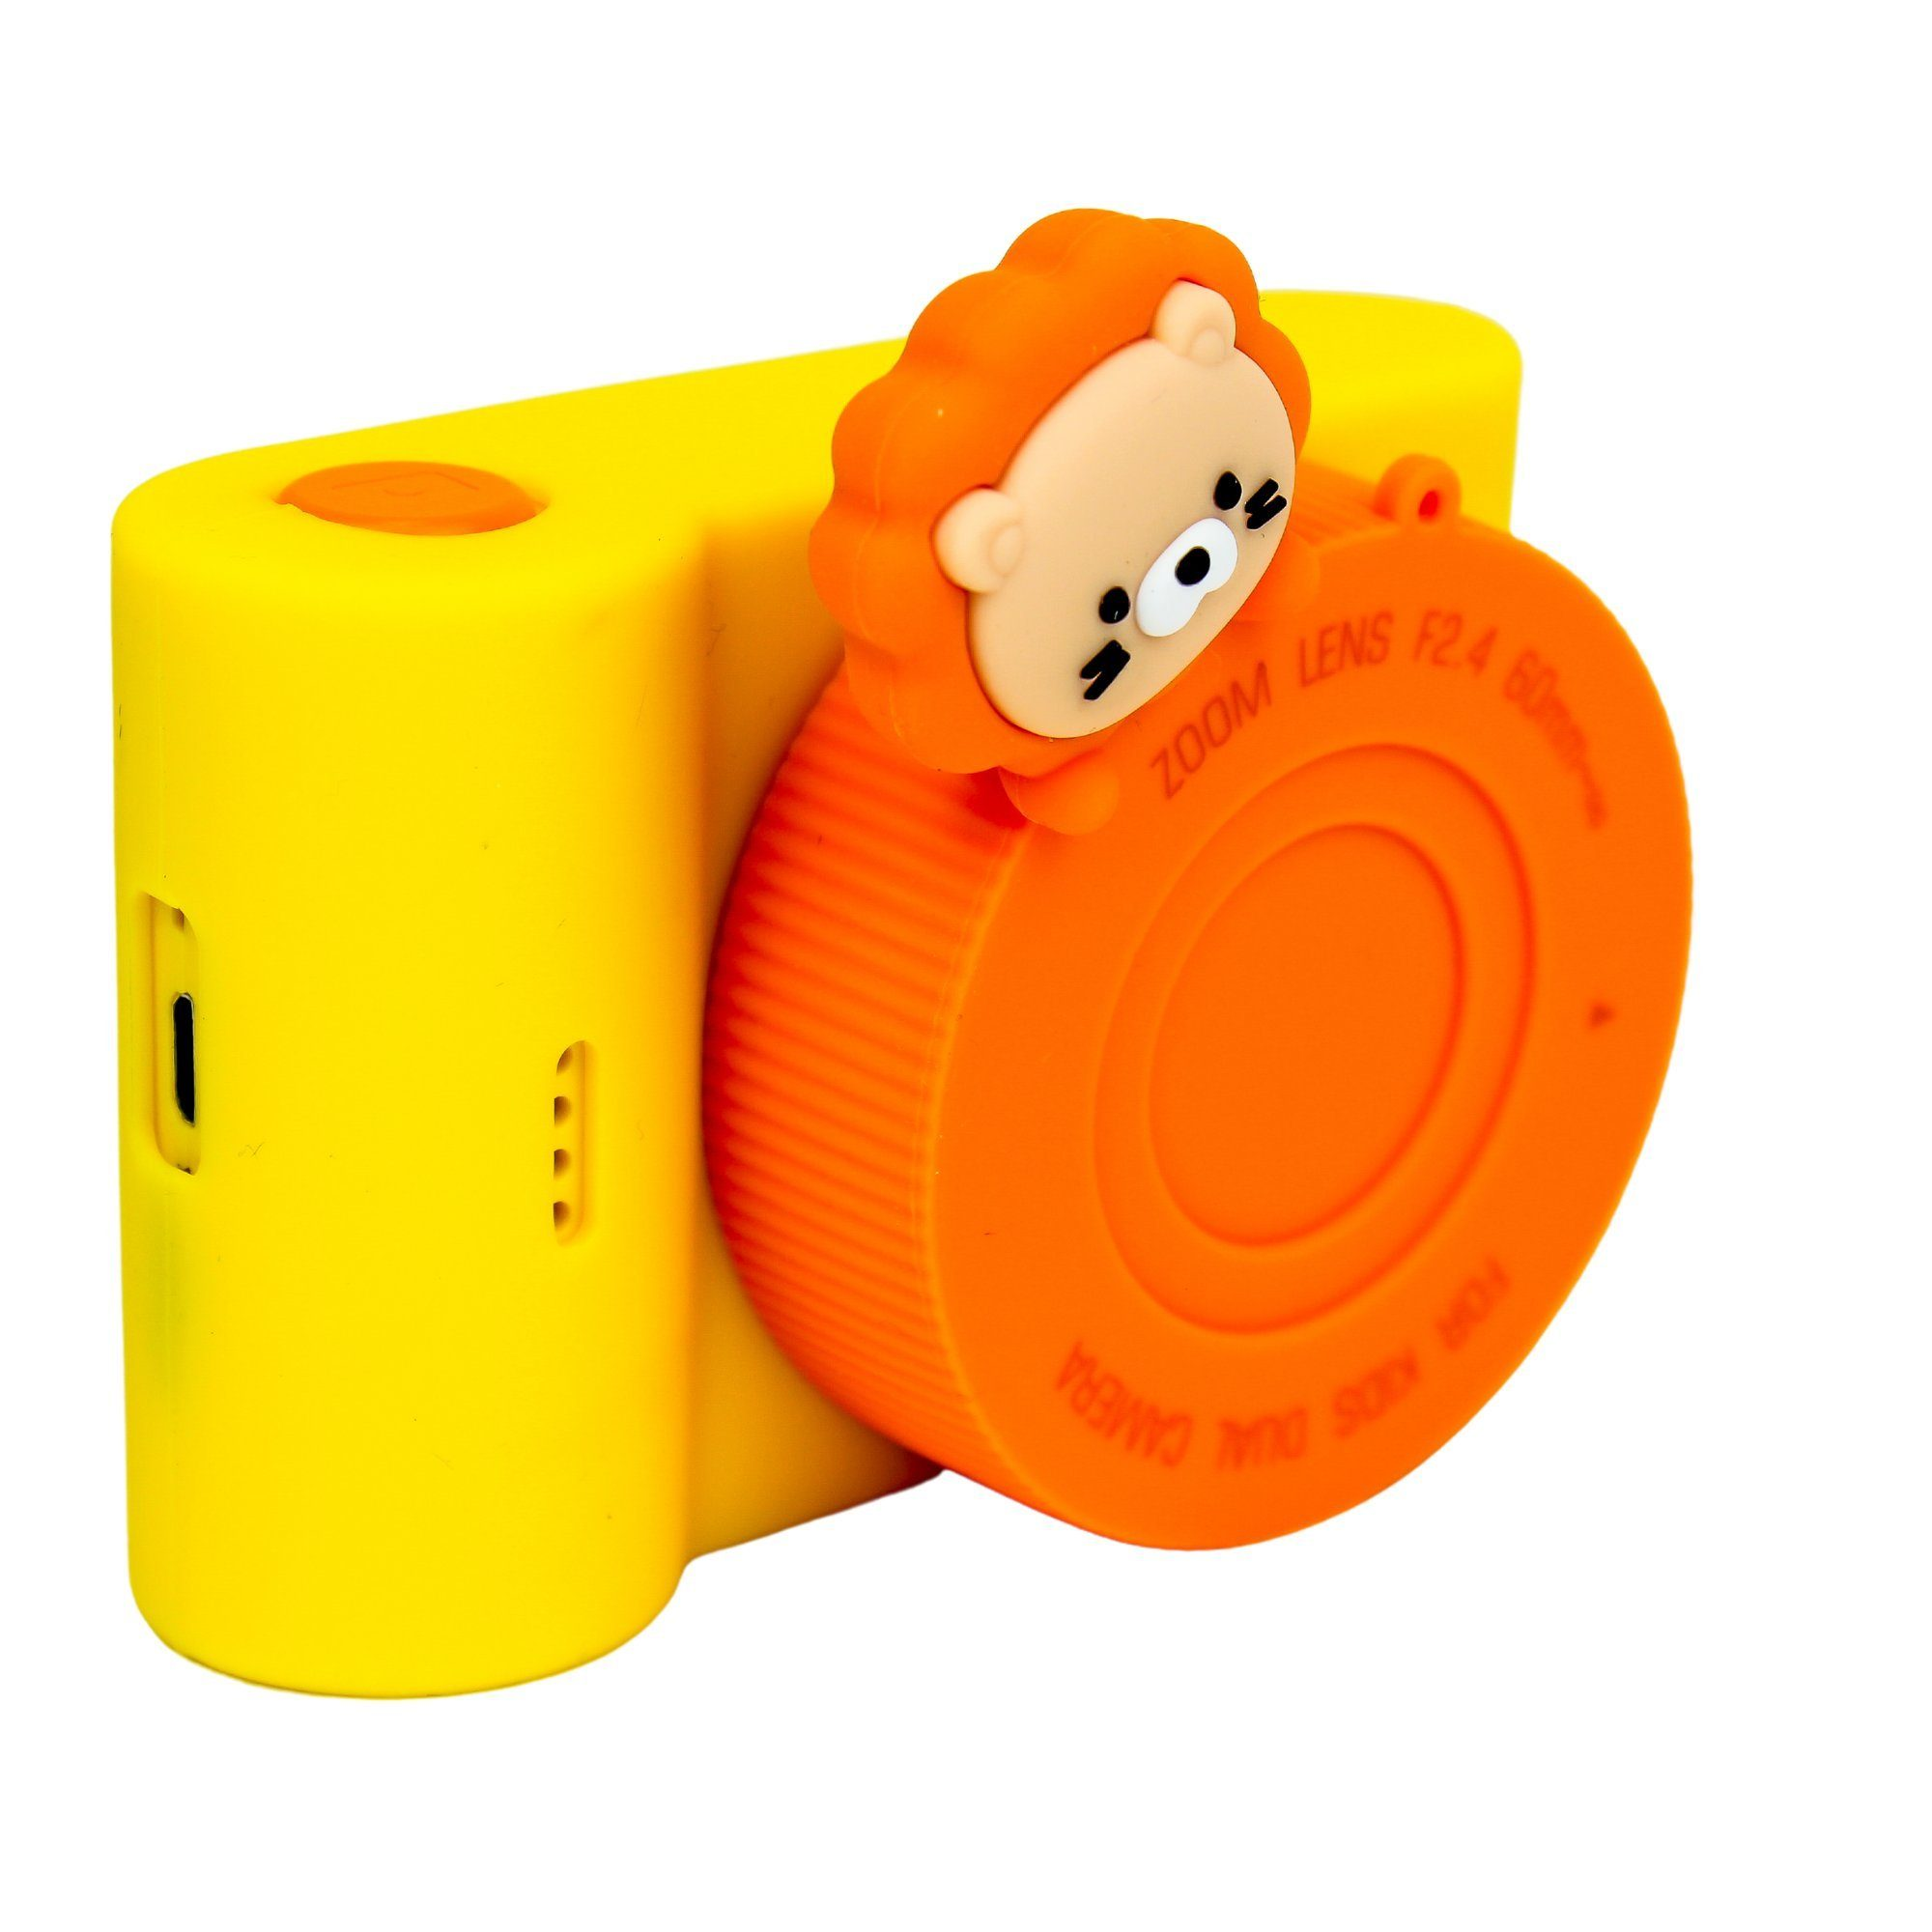 Kinder-Digitalkamera Orange- KK886 DOTMALL Löwe C5